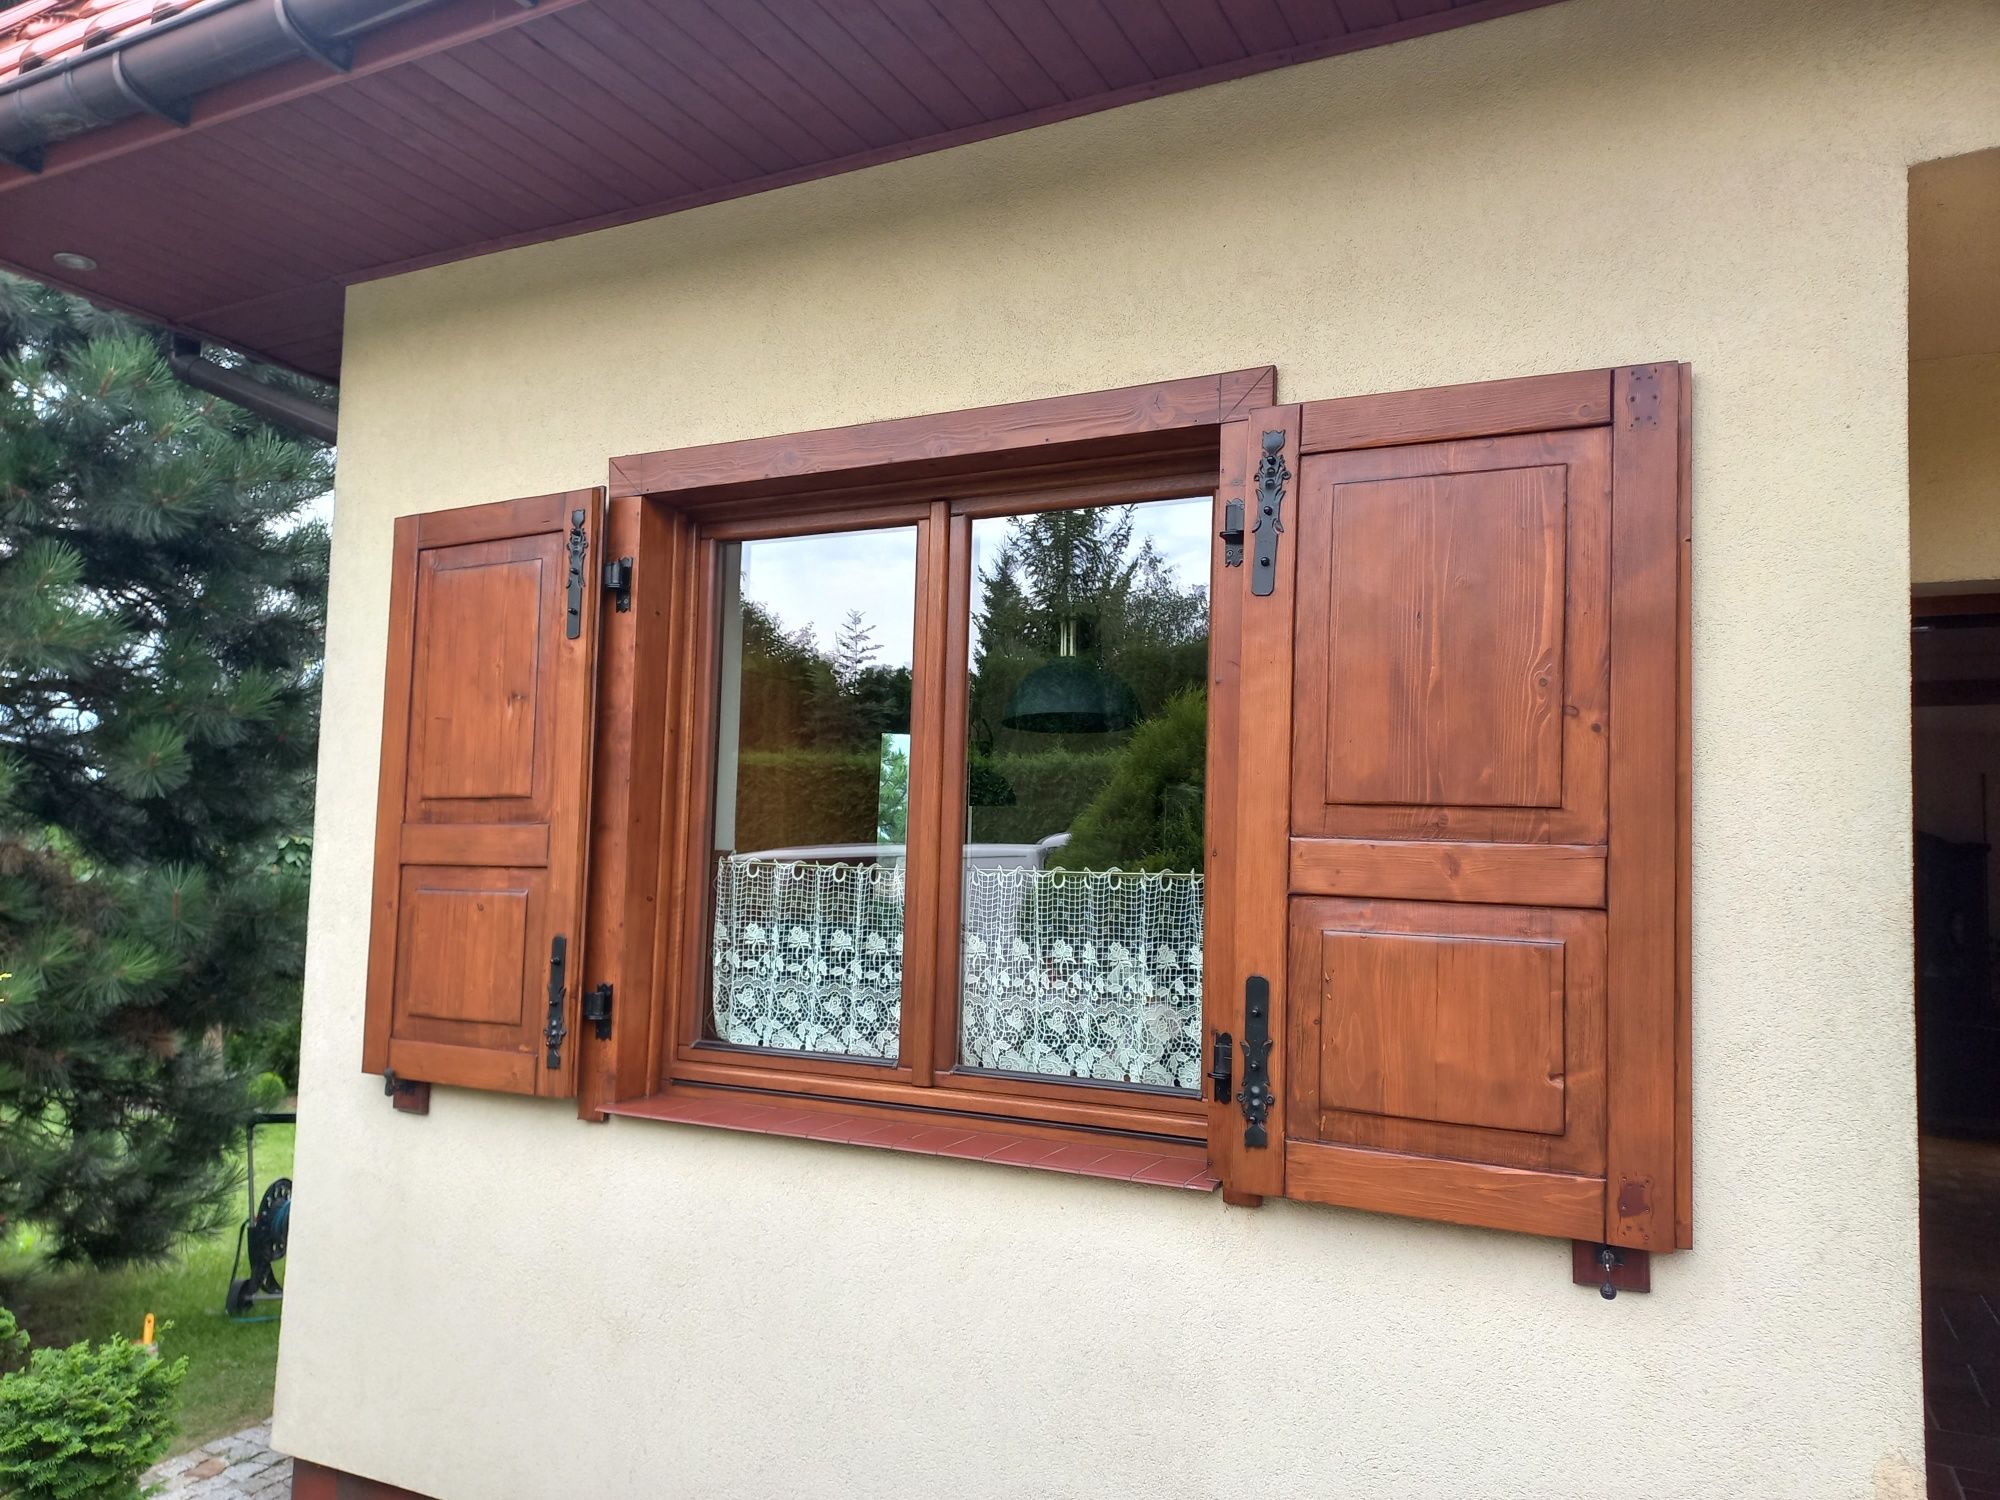 Renowacja/odnawianie/malowanie  drzwi,okien,parapetów,blatów,mebli